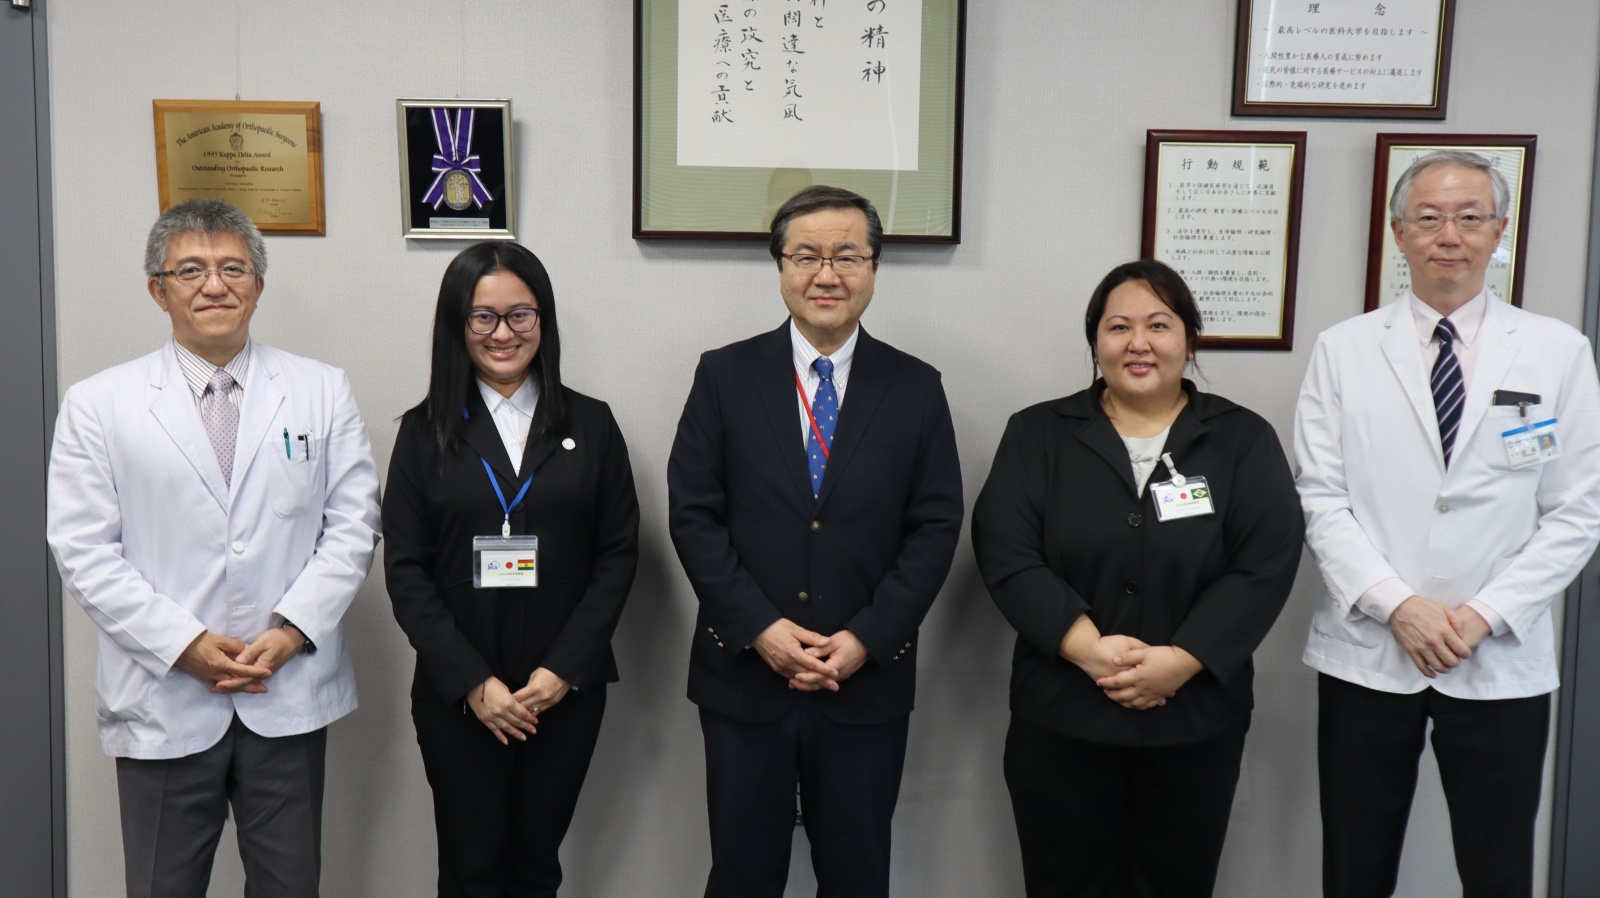 左から：仙石教授(作業療法学科長)、伊藤さん、山下学長、川上さん、渡邉教授(理学療法学科長)